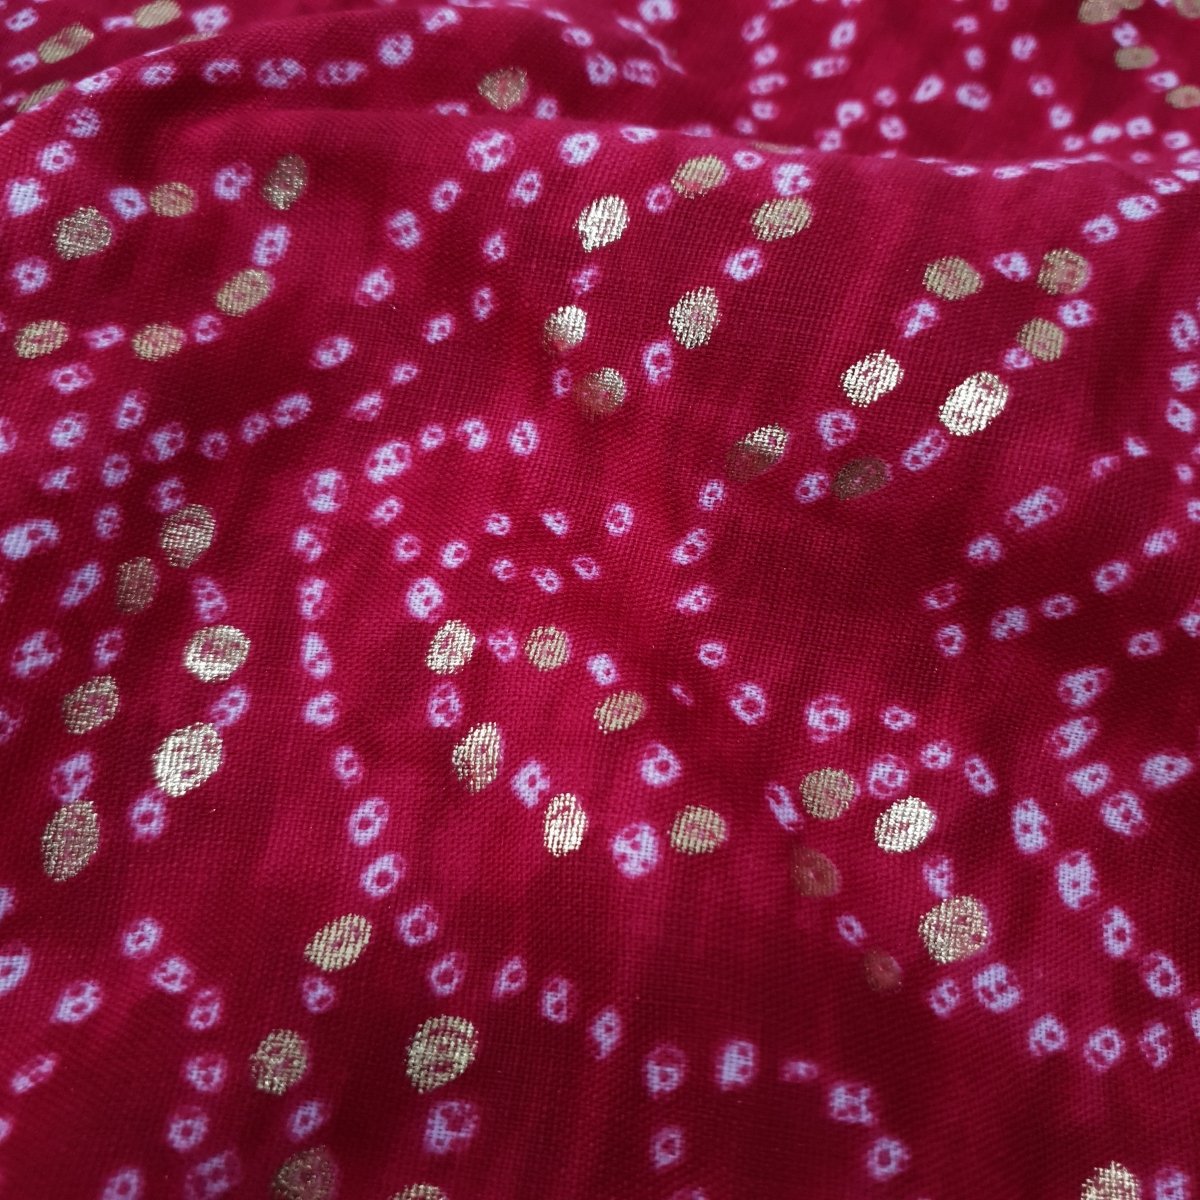 Unstitched Rani Bandhani Kurta Pyjama